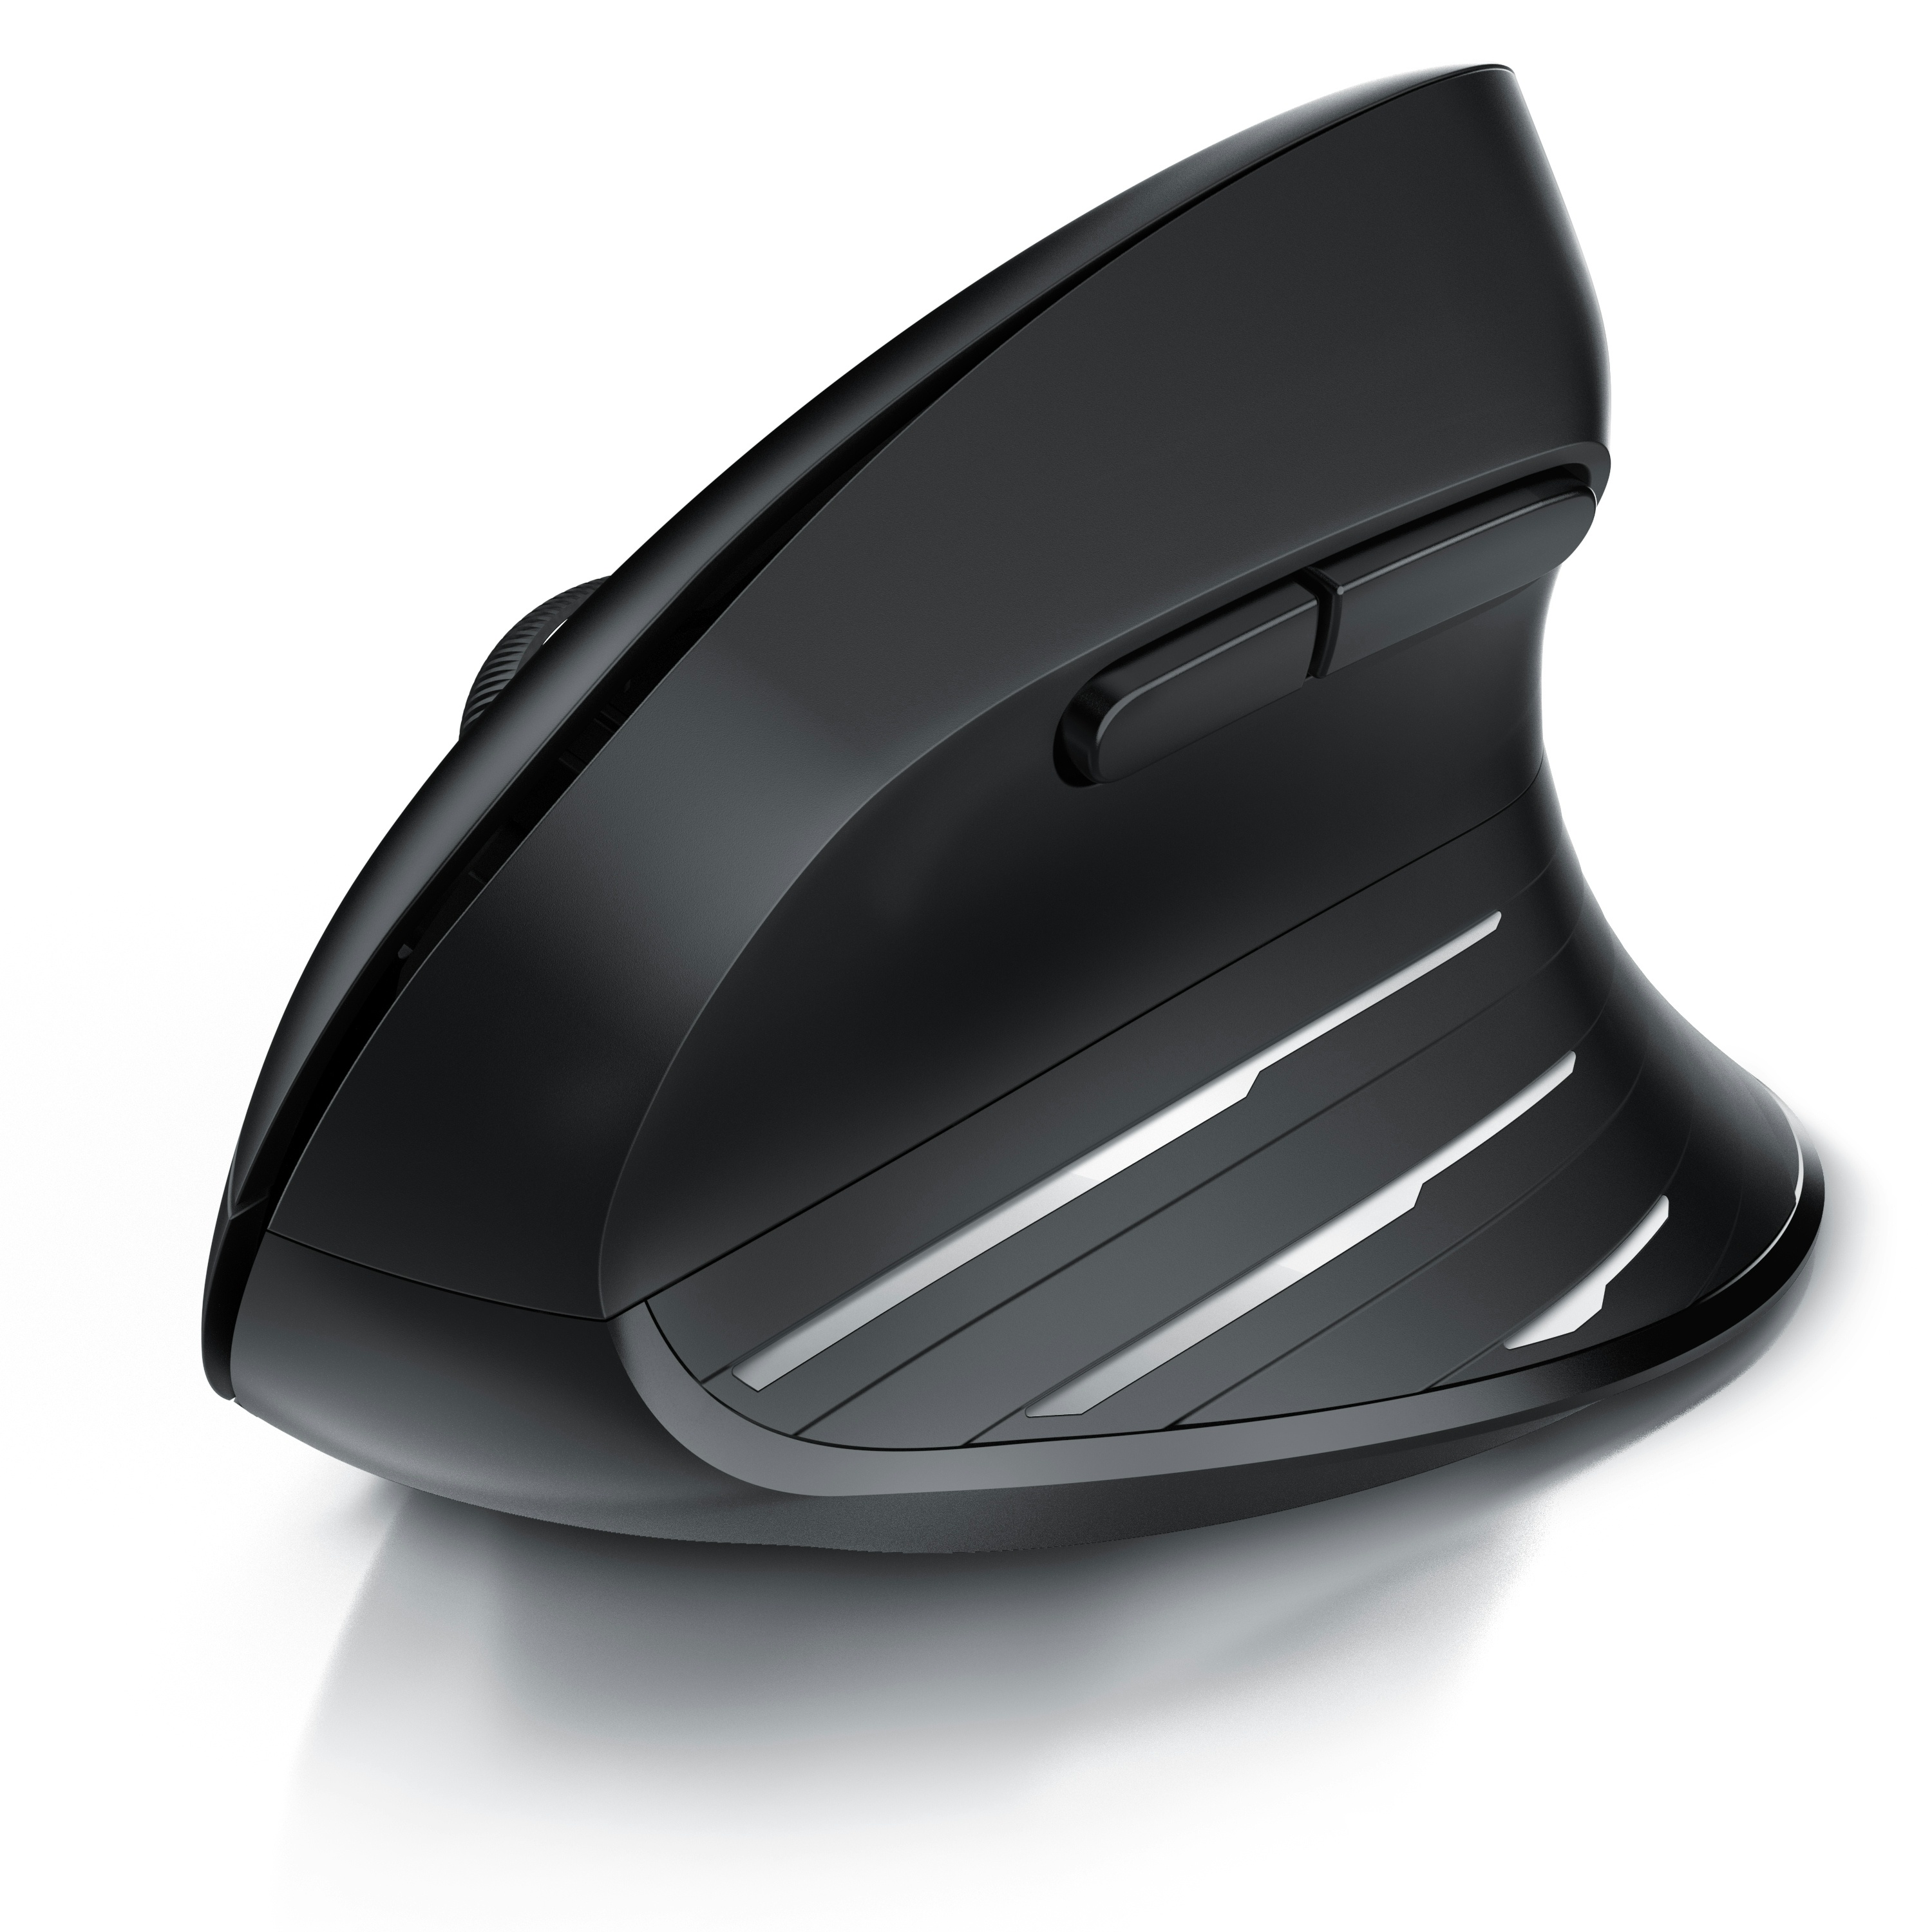 CSL Kabellose Maus, 2,4 GHz mit USB-Empfänger, 1000-2400 DPI, Wireless Maus 6 Tasten mit Nano Empfänger, für Rechtshänder, kompatibel mit PC und Mac